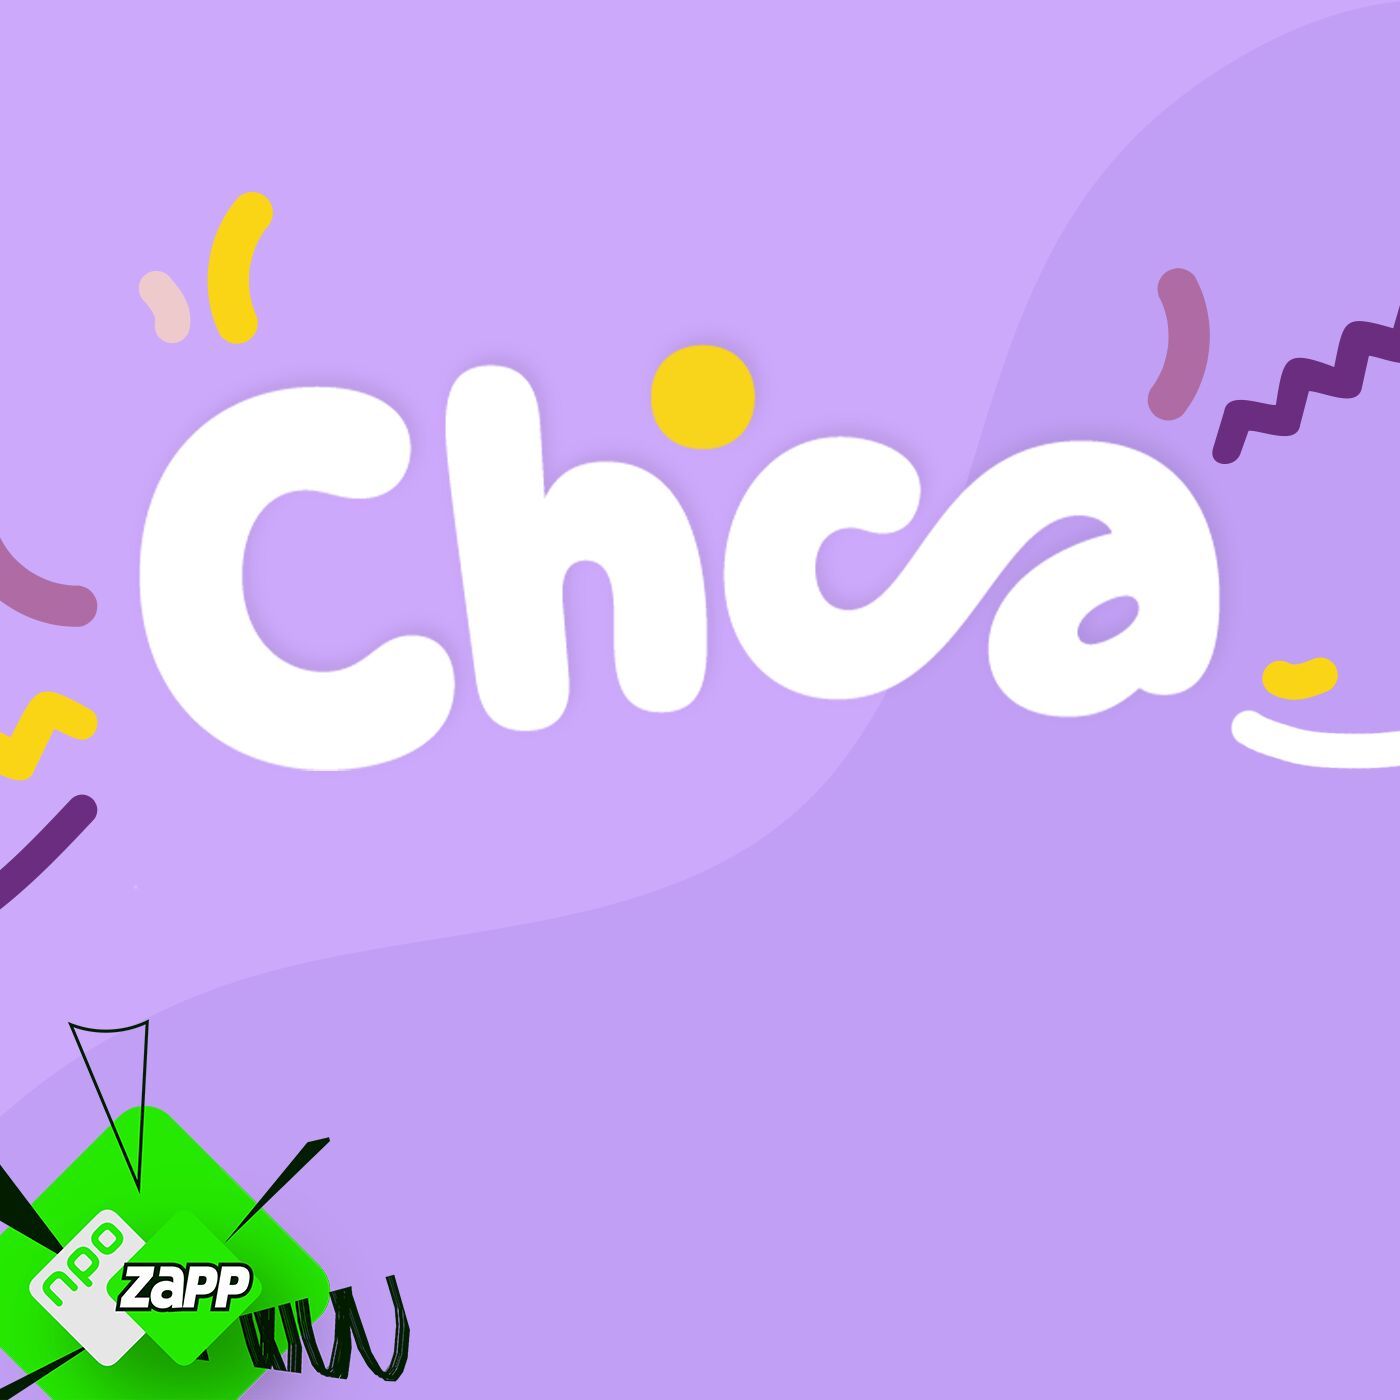 Logo CHICA